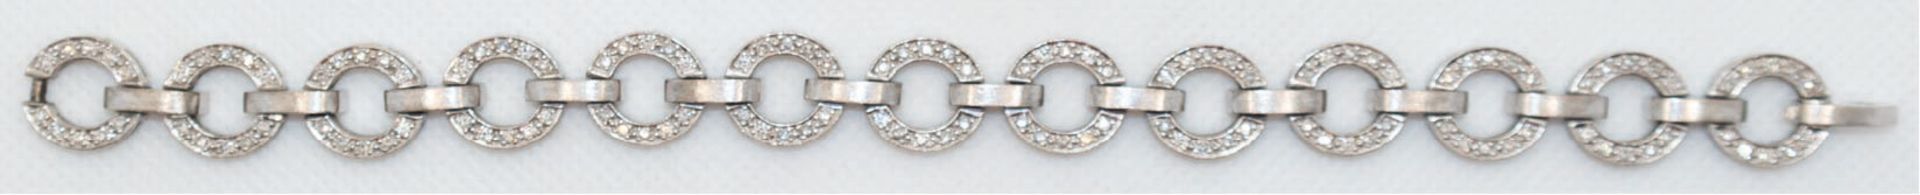 Chopard-Brillant-Armband, 750er WG, 48,25 g, 13 ringförmige Glieder ausgefaßt mit je 10 Brillanten,